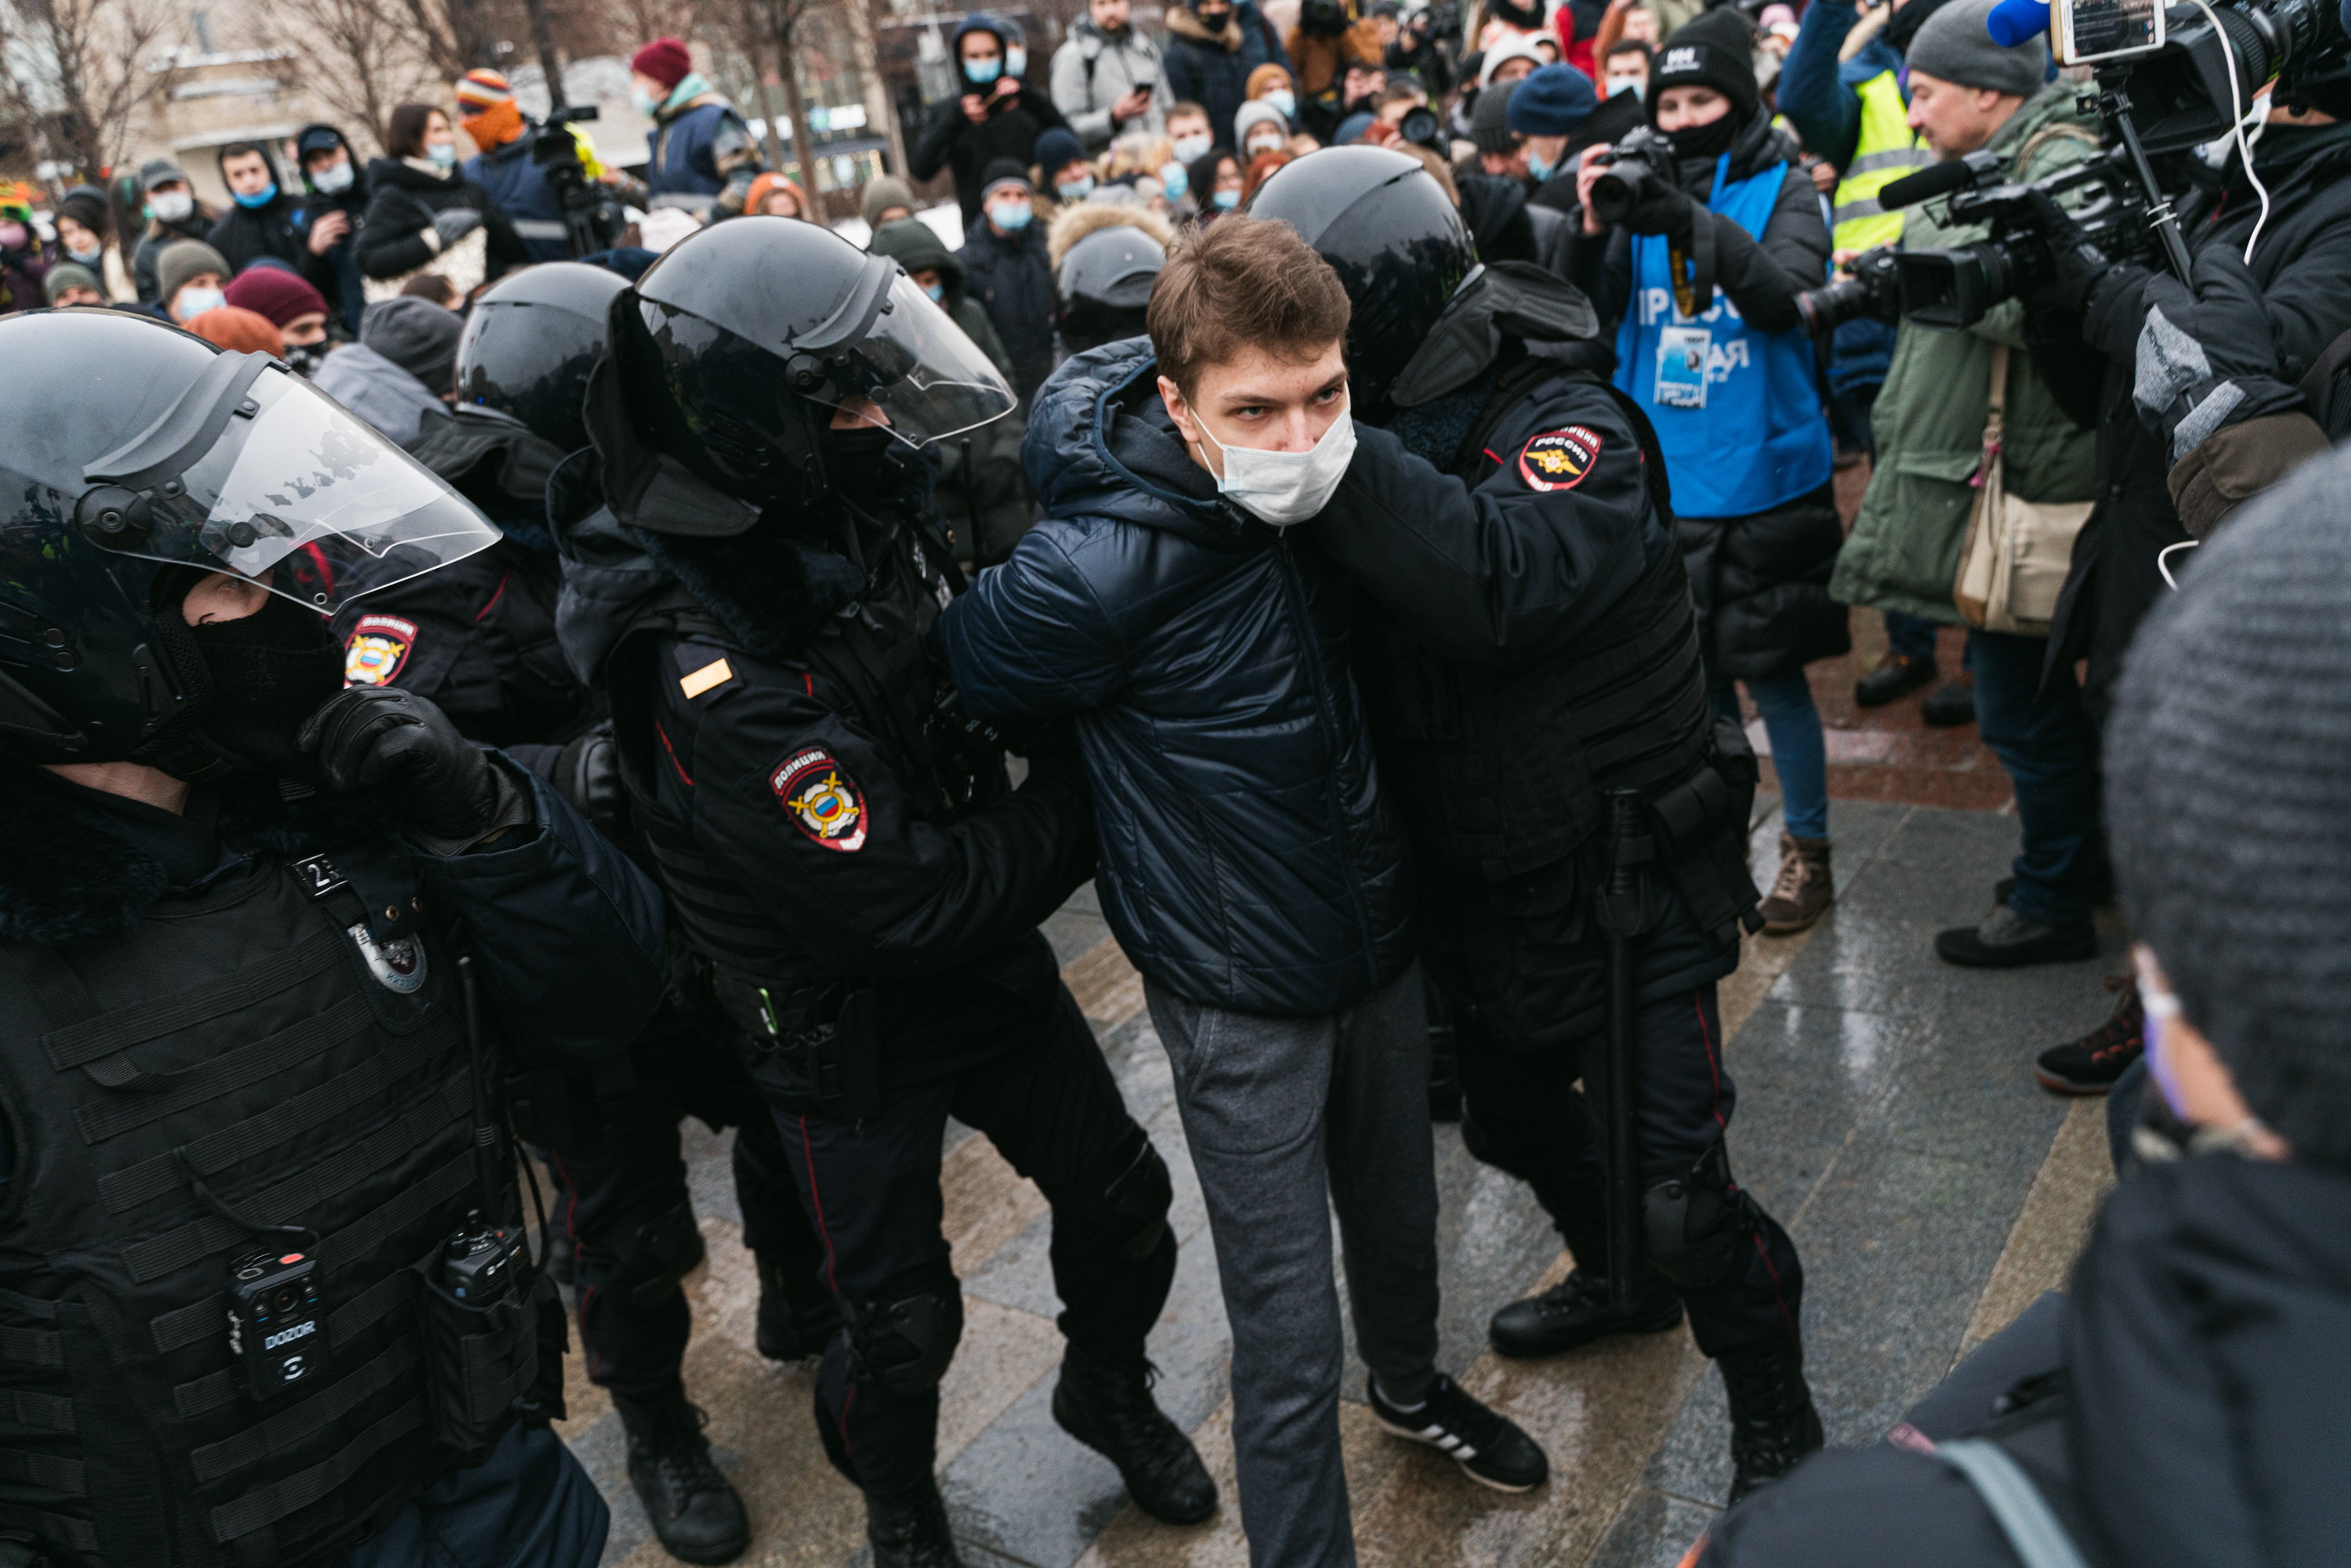 Задержание на акции «Свободу Навальному!» в Москве, Пушкинская площадь, 23 января 2021 года / Фото: Наталия Буданцева для ОВД-Инфо